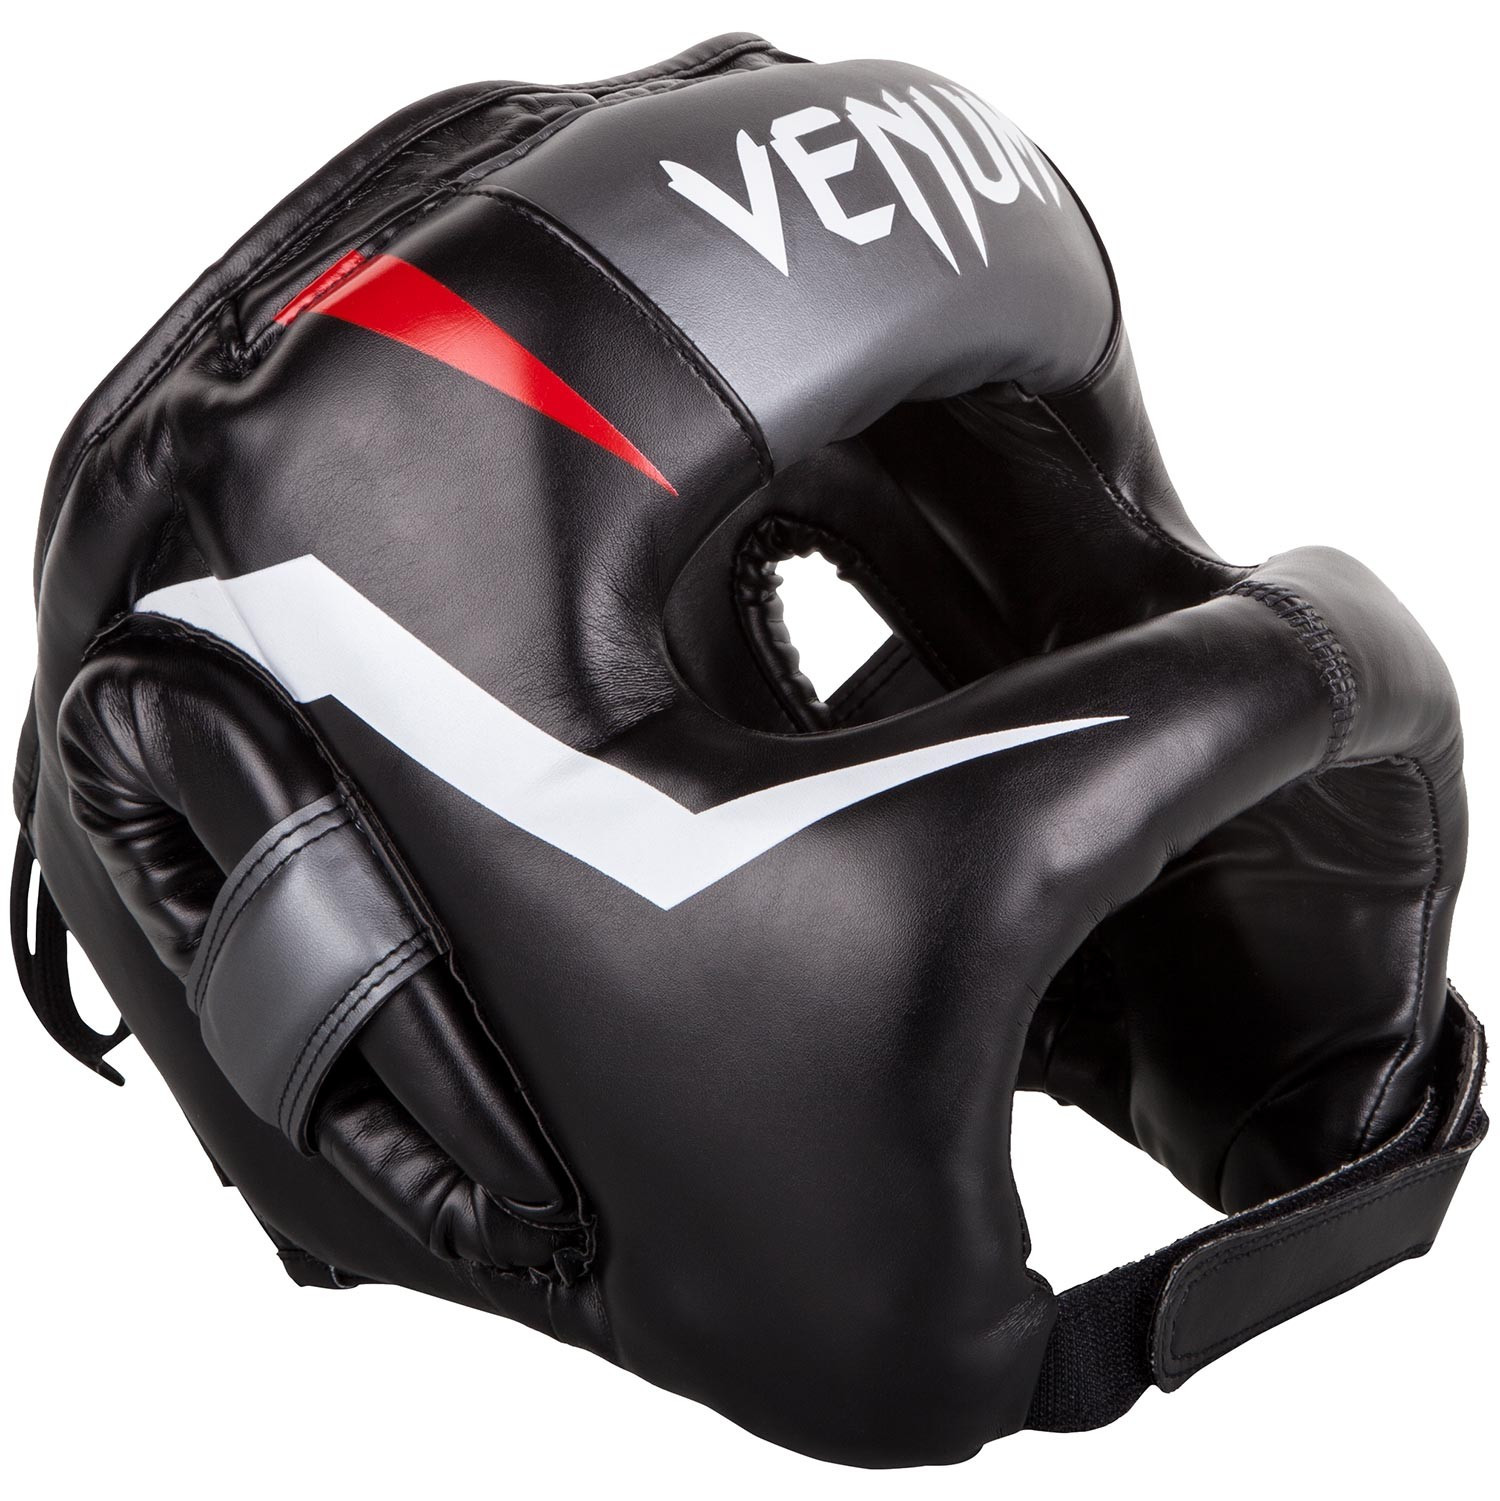 

Бамперный боксерский шлем venum elite iron headgear black/red/white